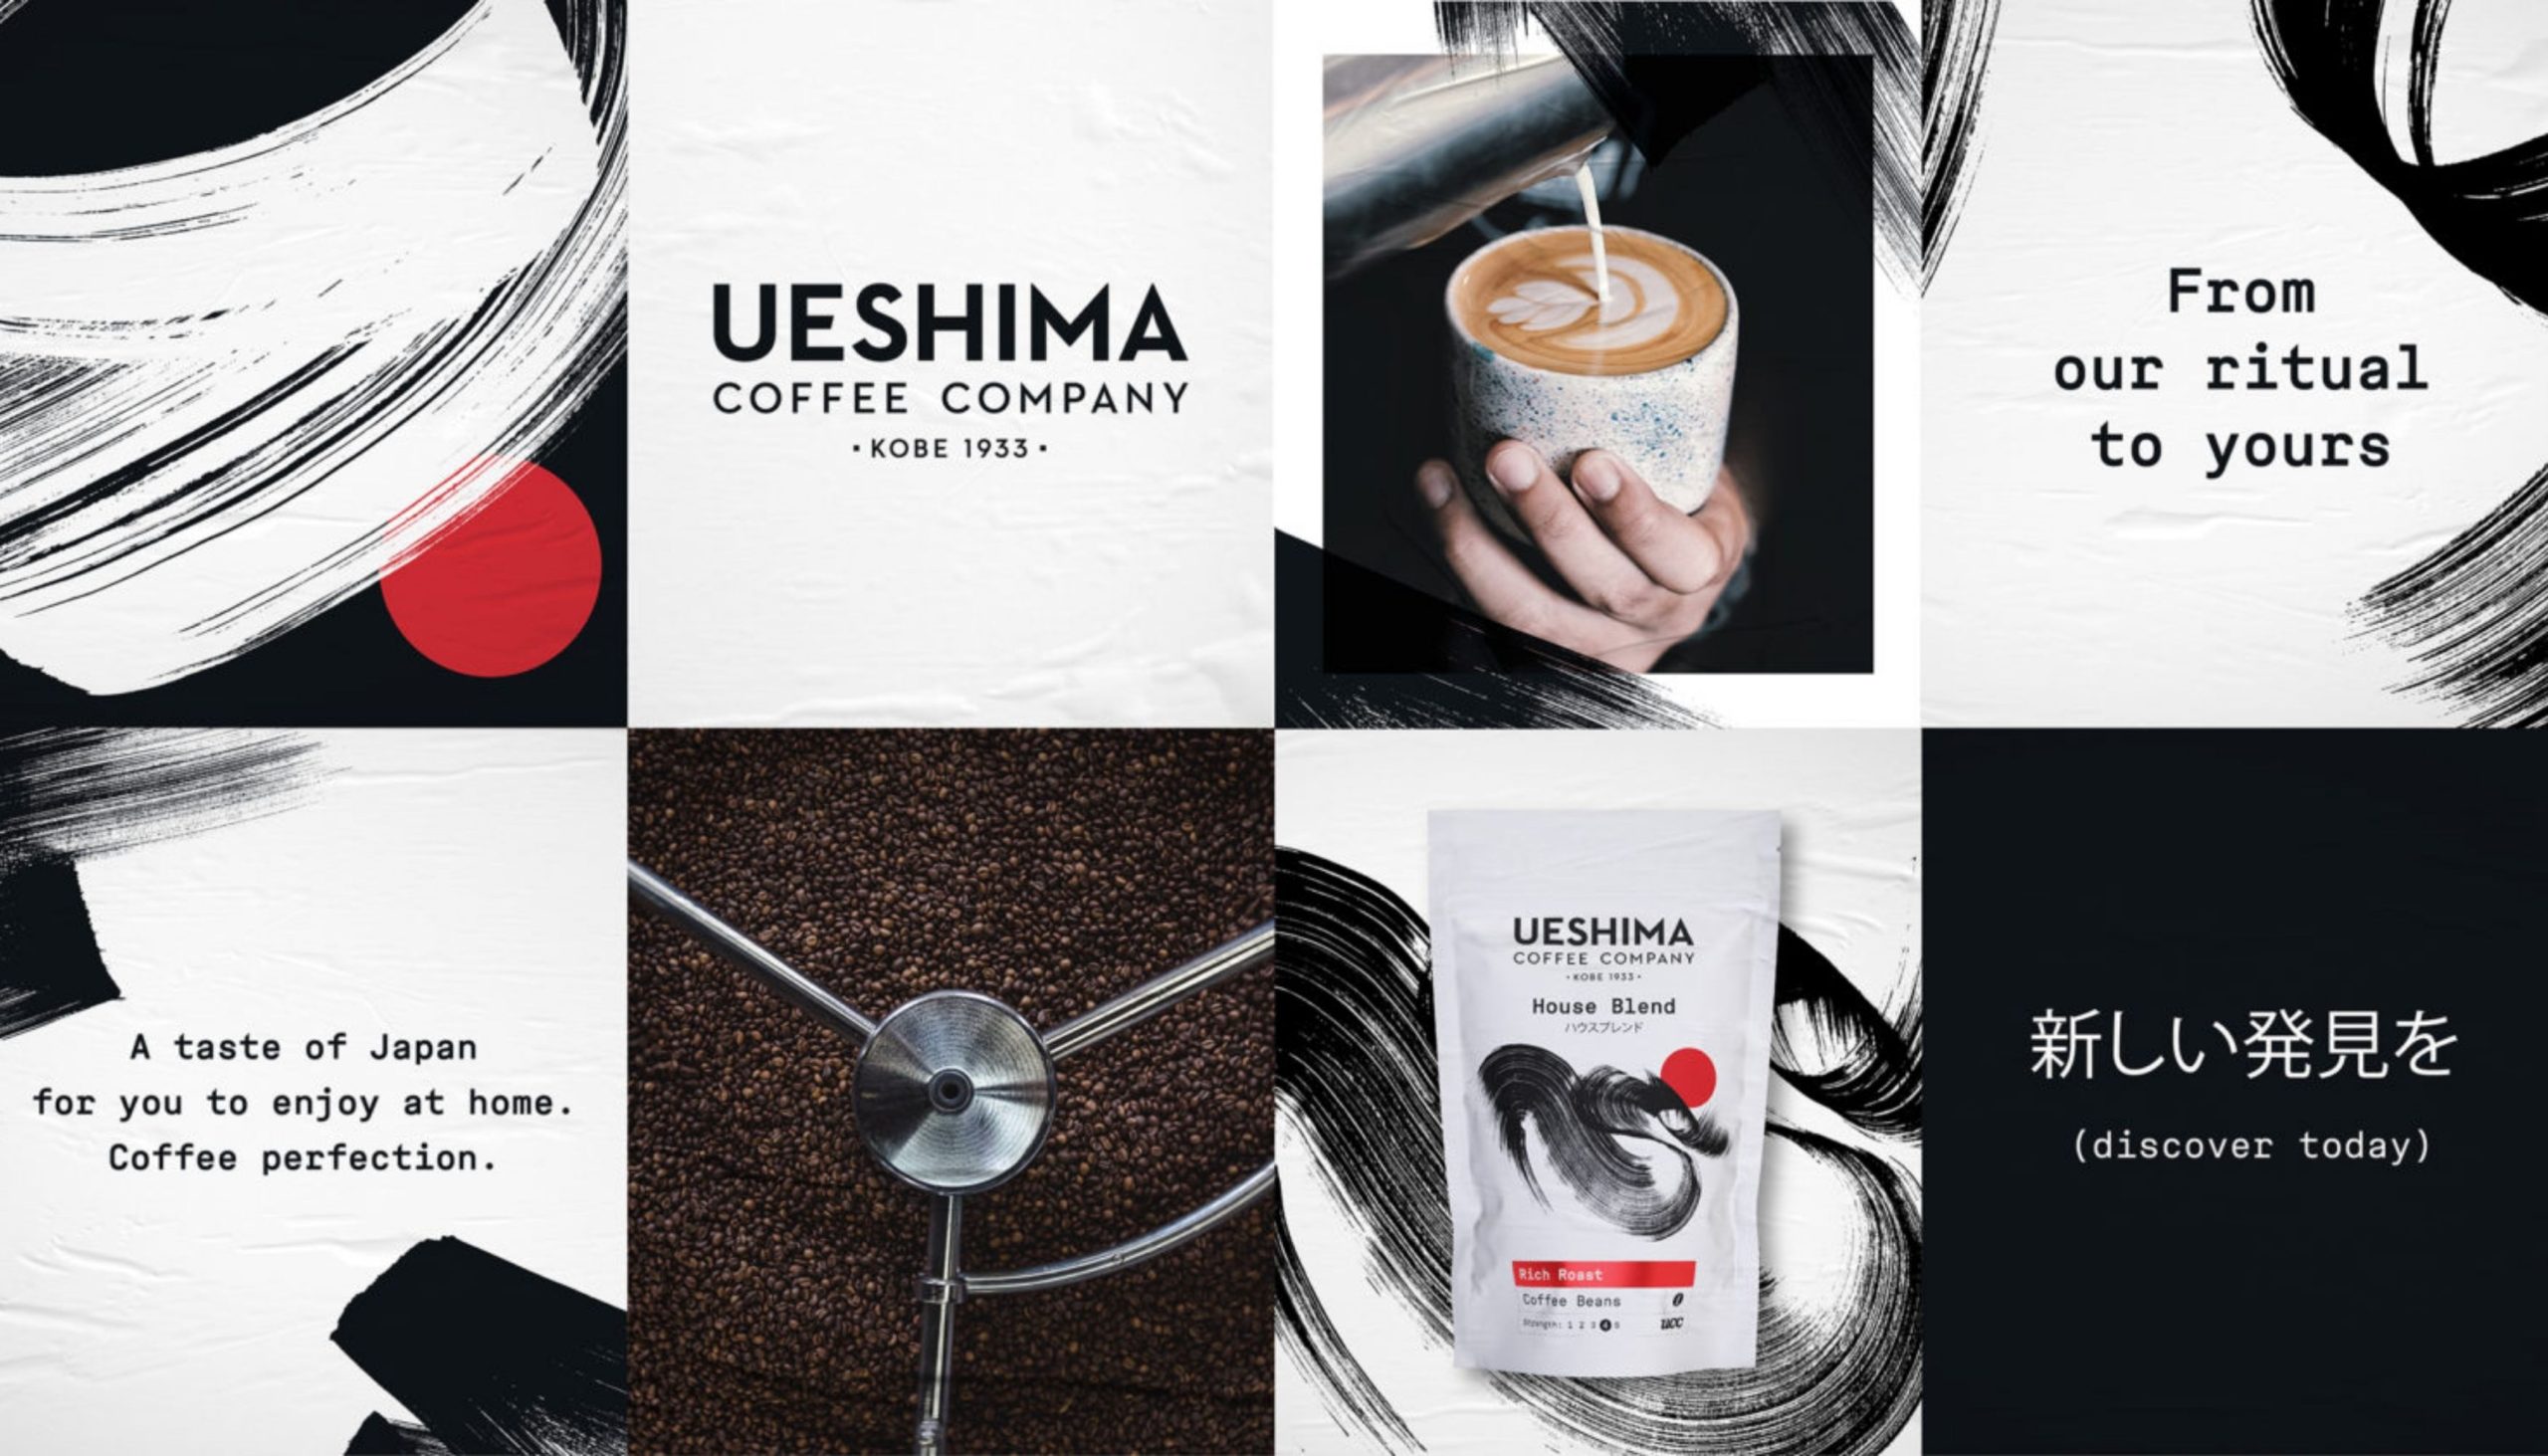 UCC Coffee introduce their new Japanese brand Ueshima Coffee Company